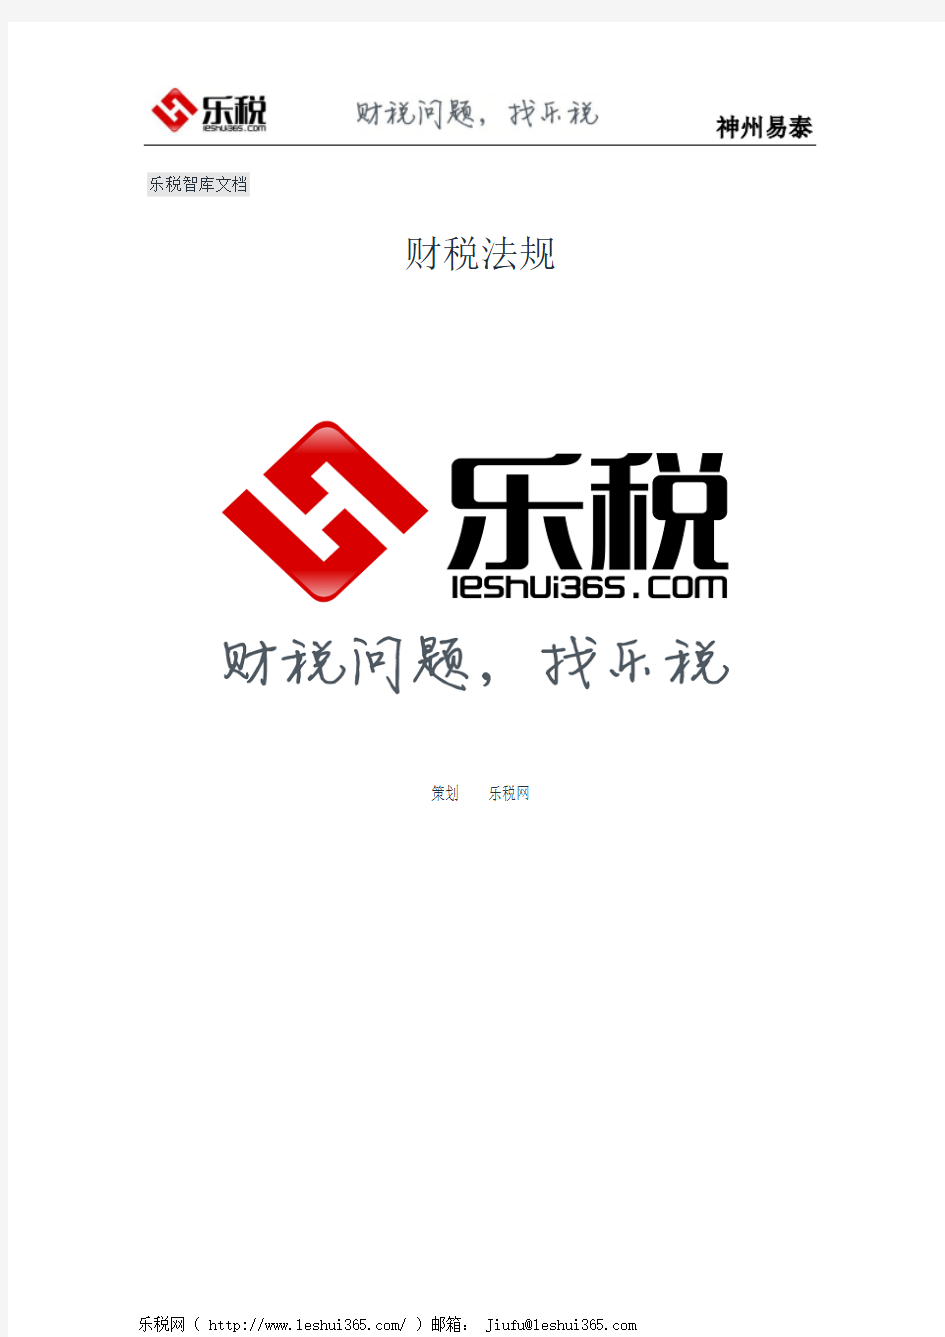 四川省国家税务局关于软件产品增值税即征即退有关问题的公告